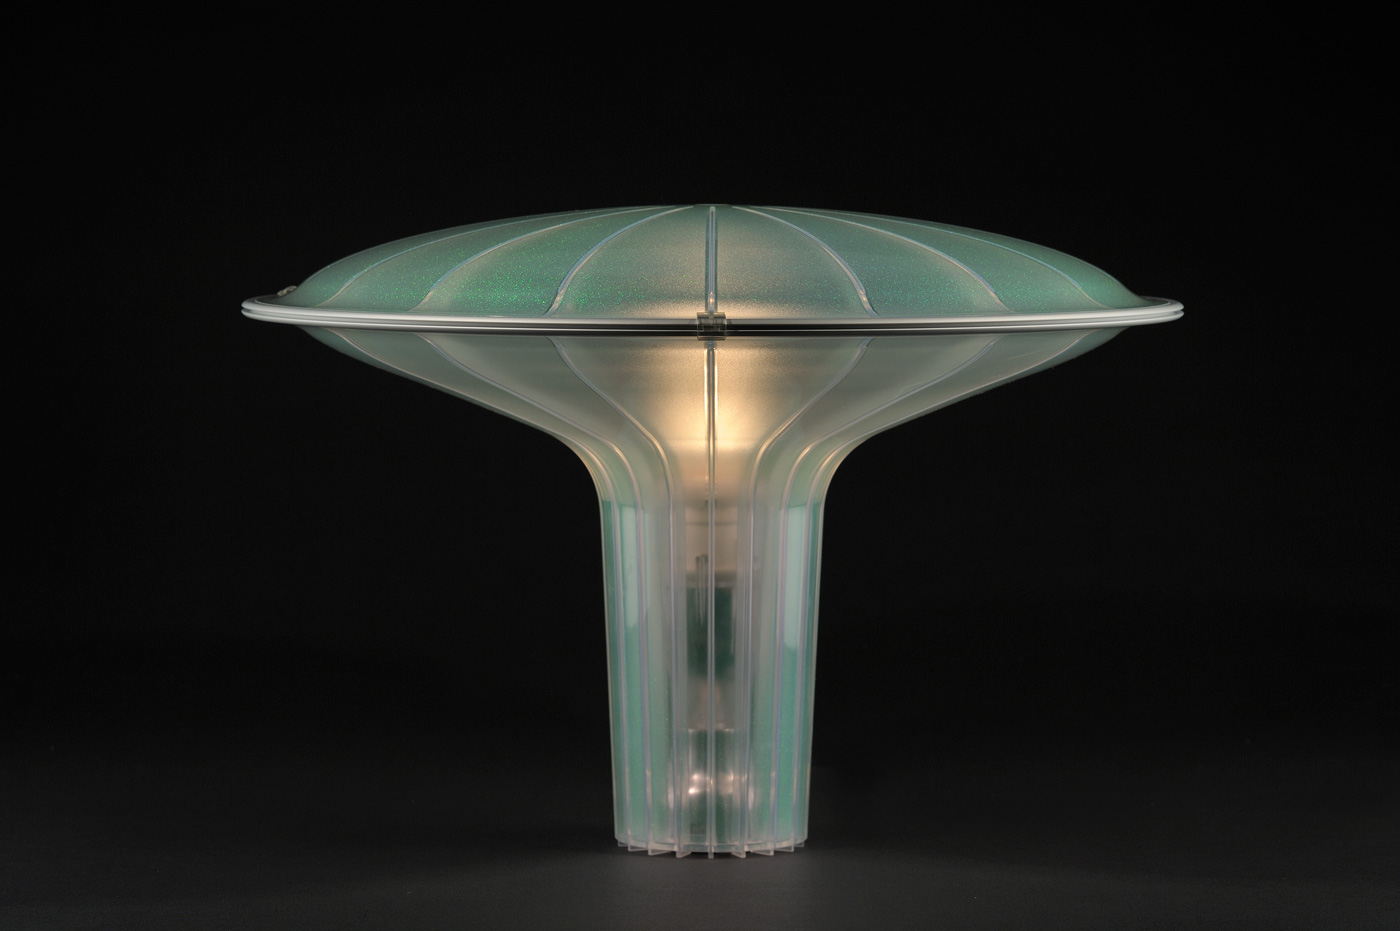 Lampe de table en plastique translucide vert dont la base conique devient très évasée vers le haut pour former un dôme en lieu d’abat-jour.